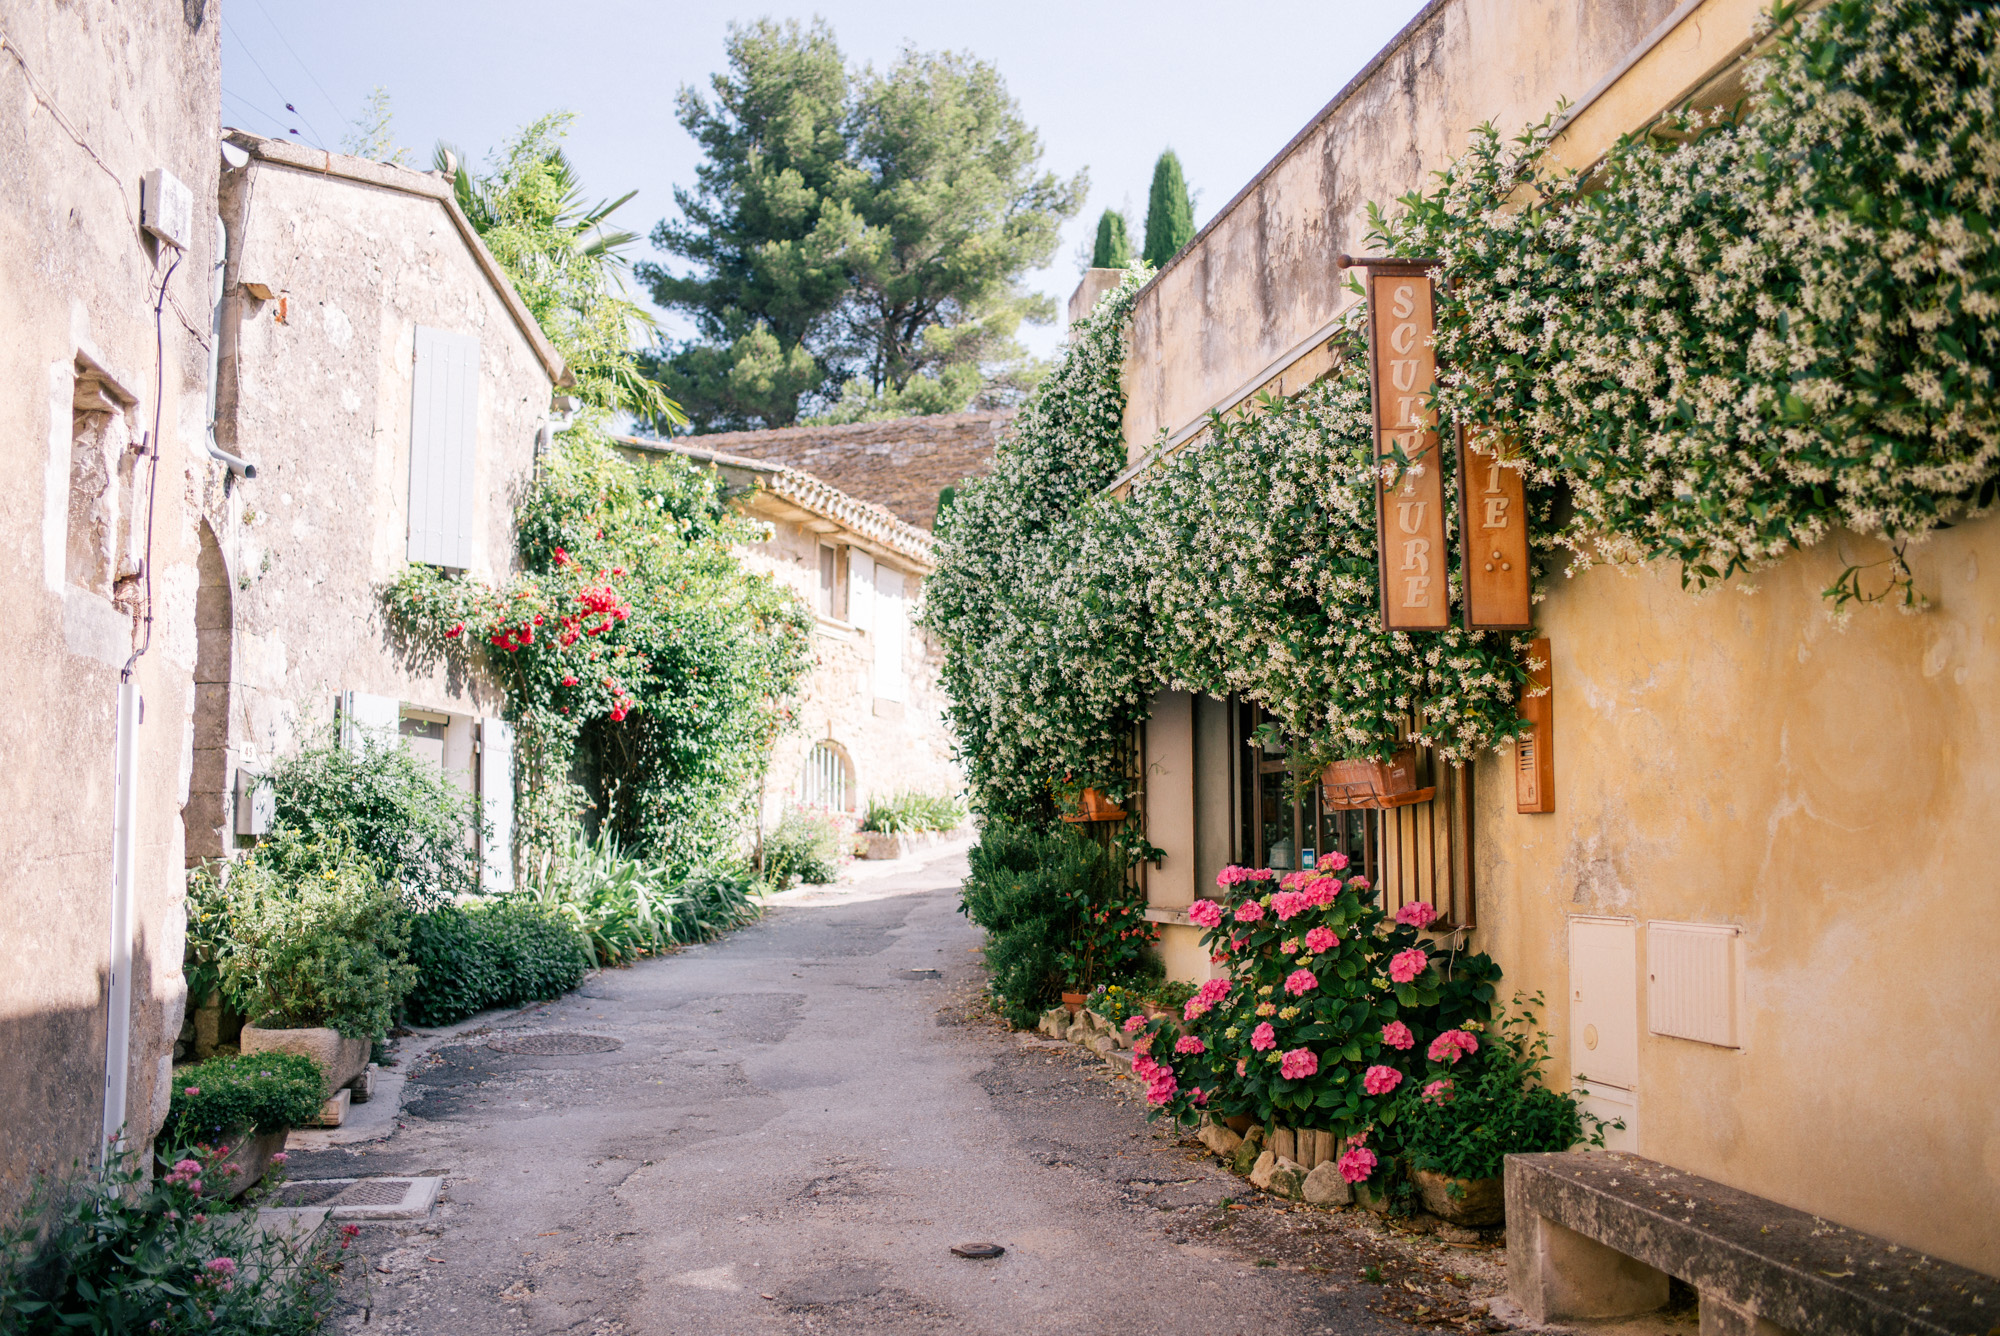 gmg-provence-france-villages-1007929